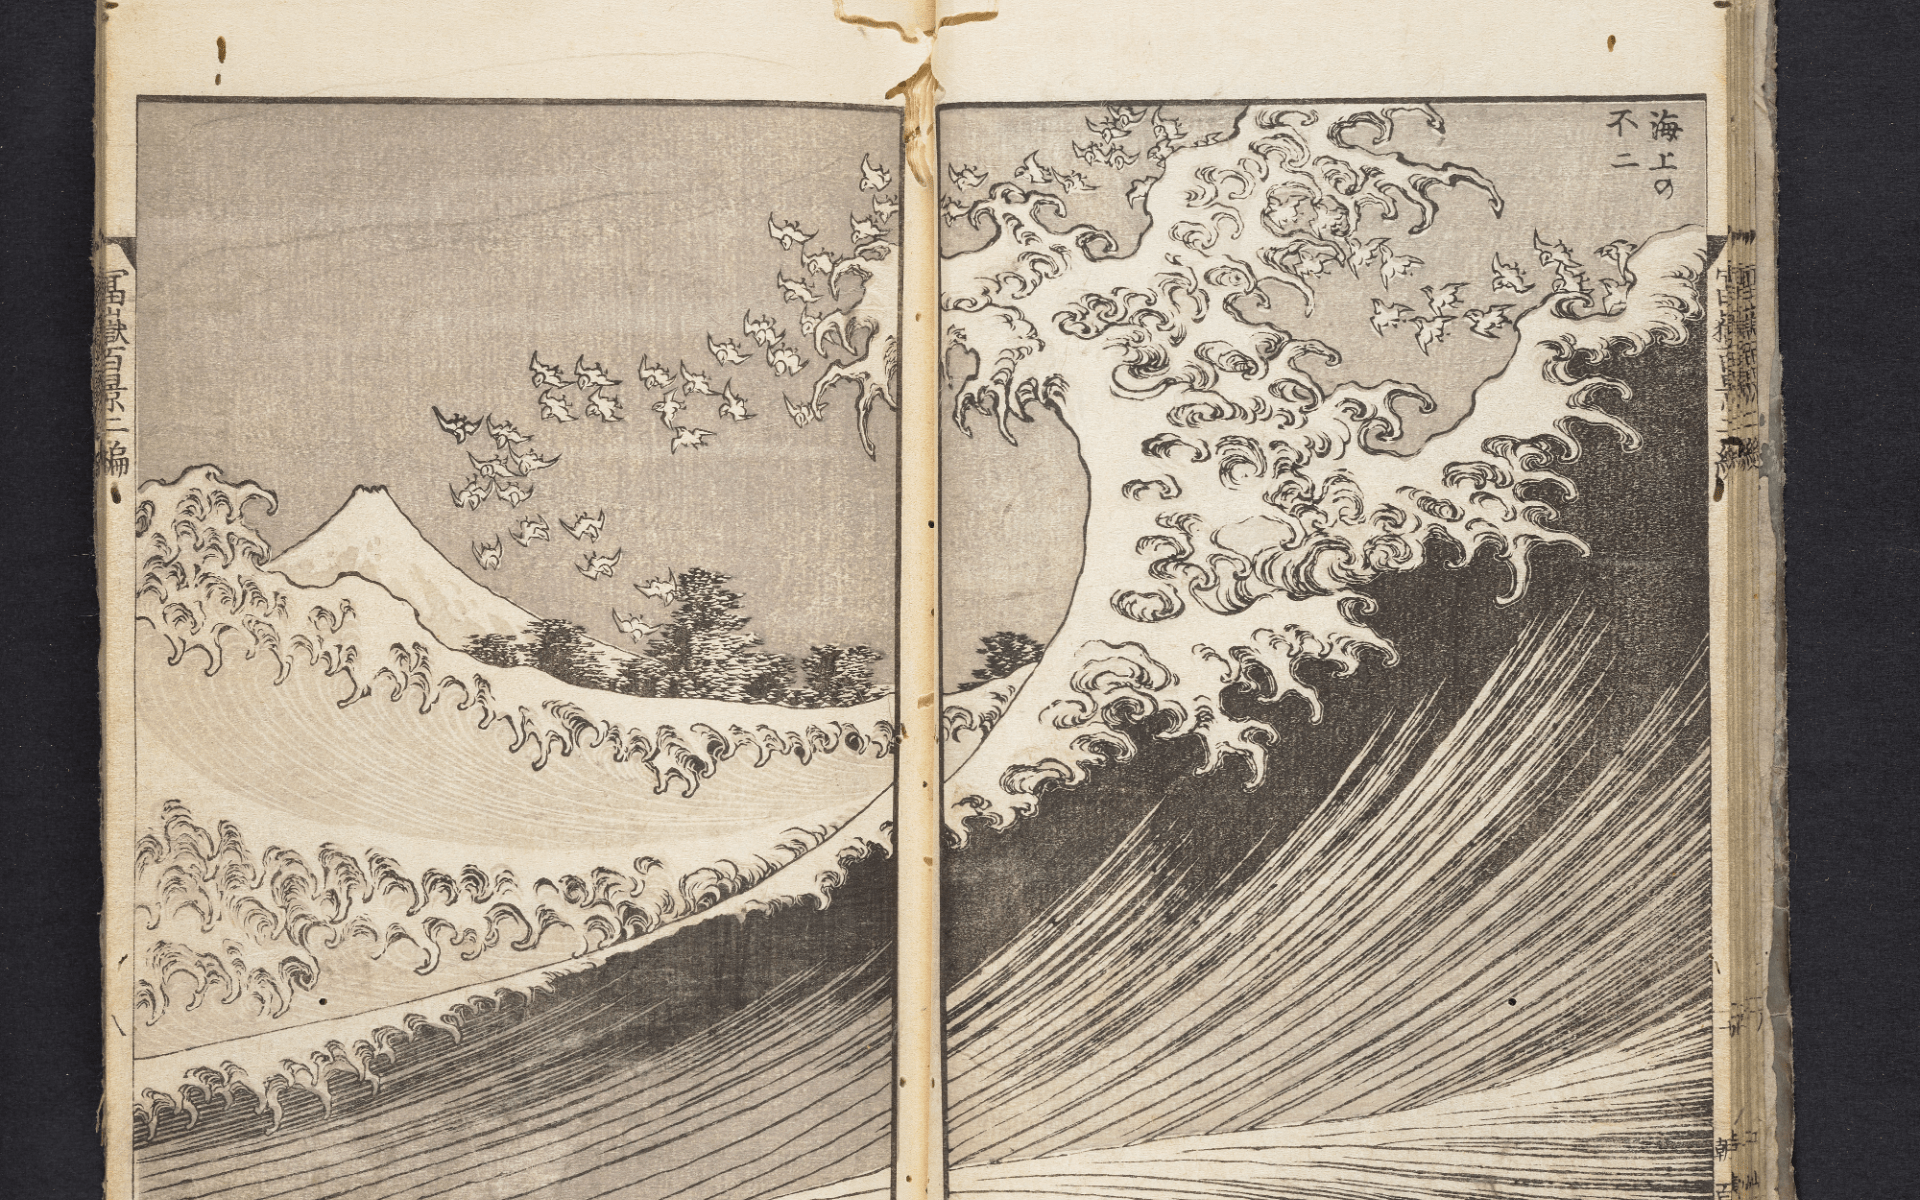 Katsushika Hokusai 葛飾北斎, Fugaku Hyakkei 富嶽百景, 1834-1849 